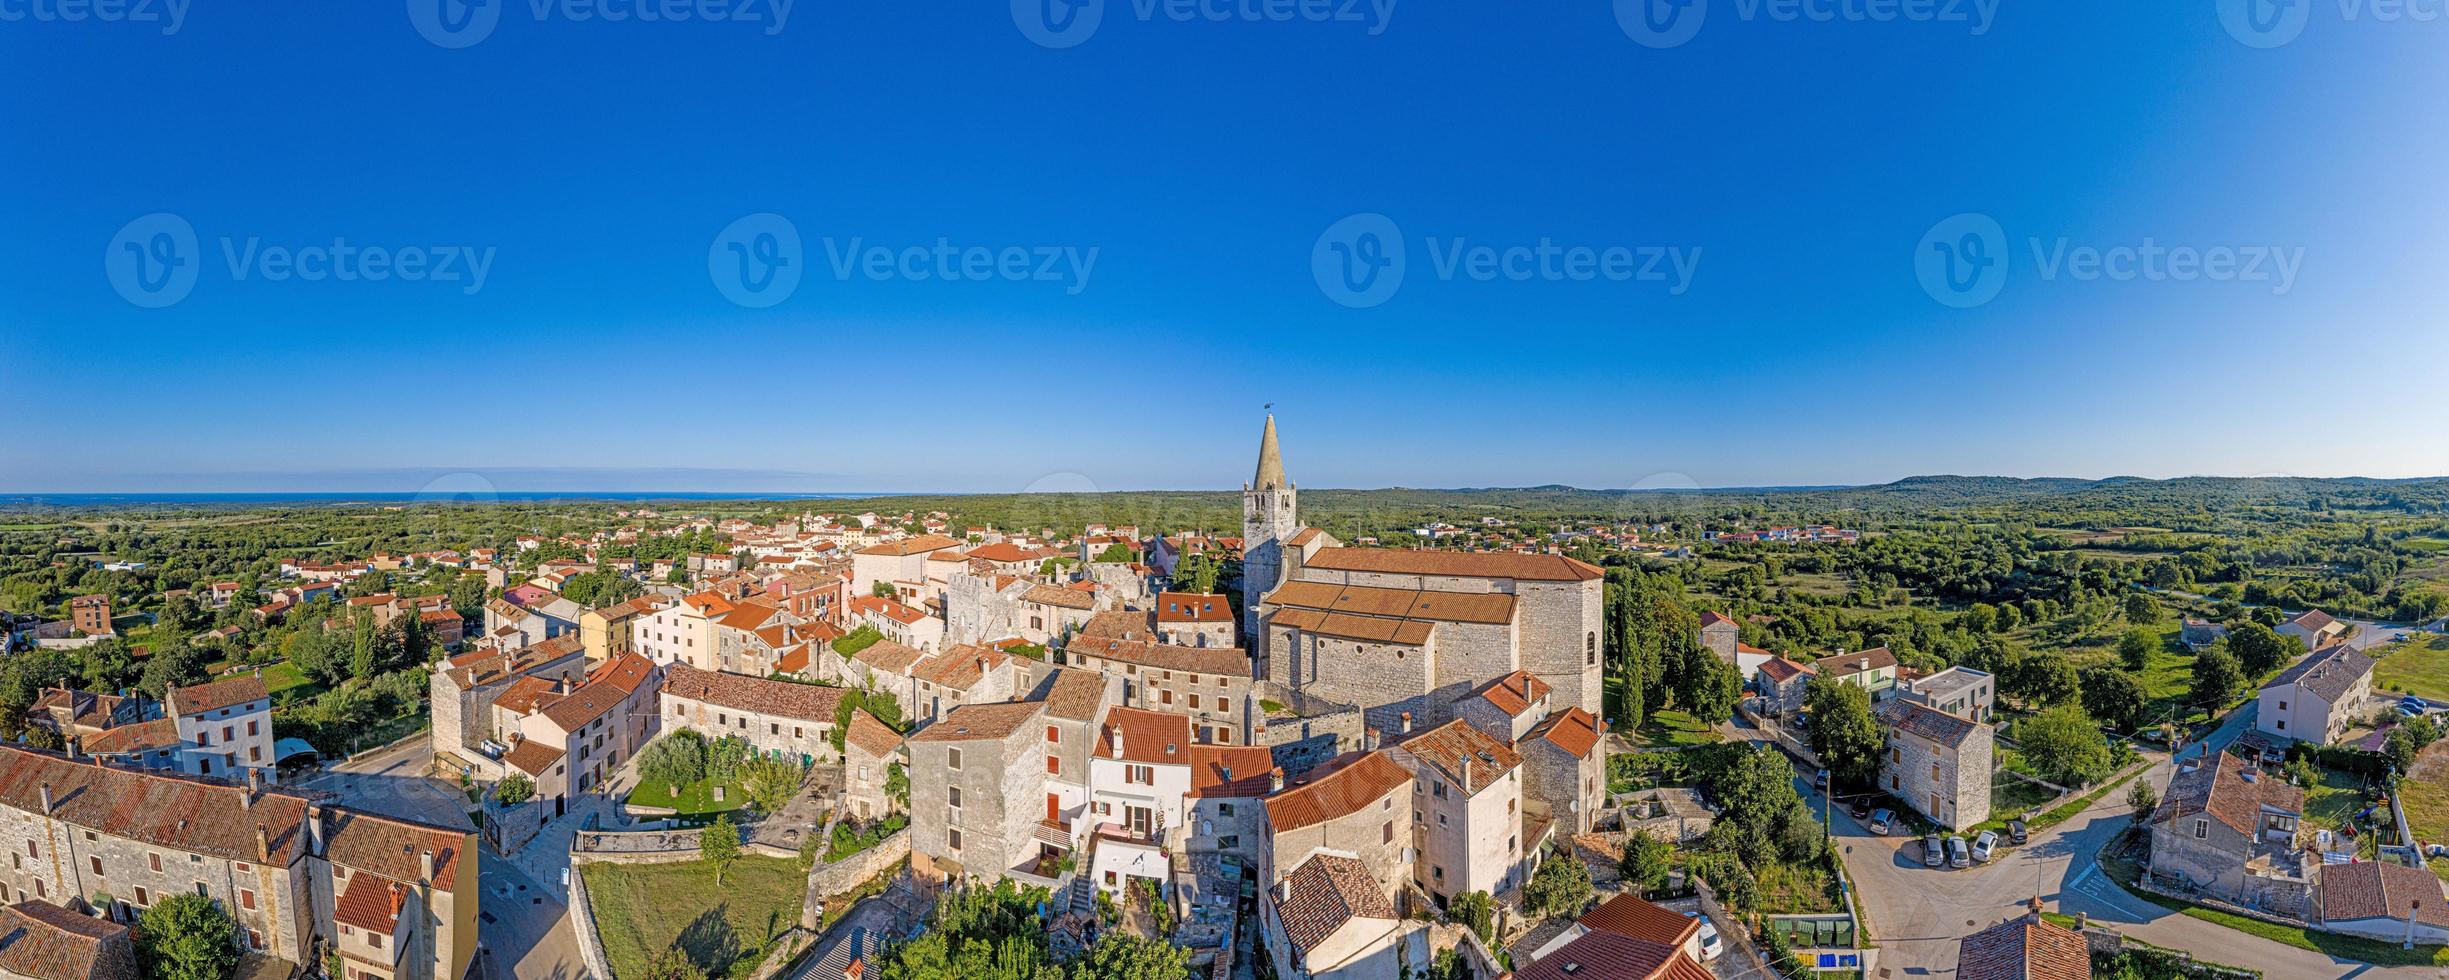 imagen panorámica aérea de drones de la ciudad medieval bale en la península de istria foto